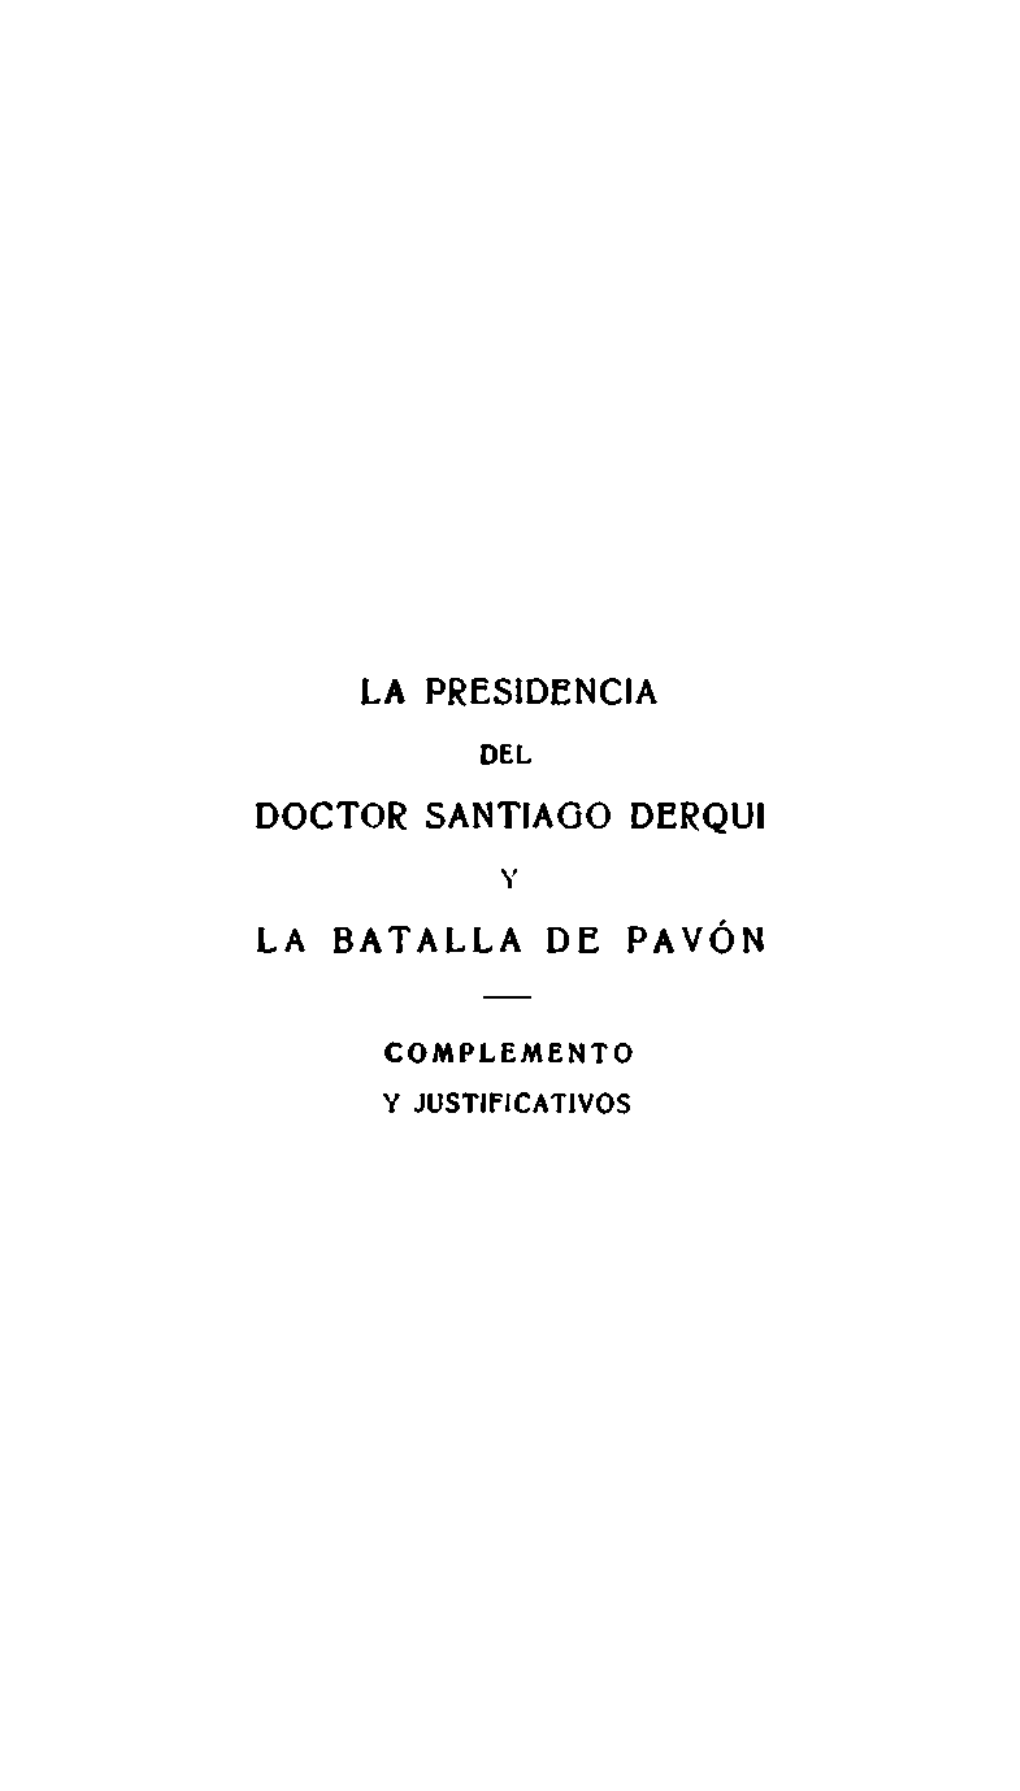 La Presidencia Del Doctor Santiago Derqui Y La Batalla De Pavón